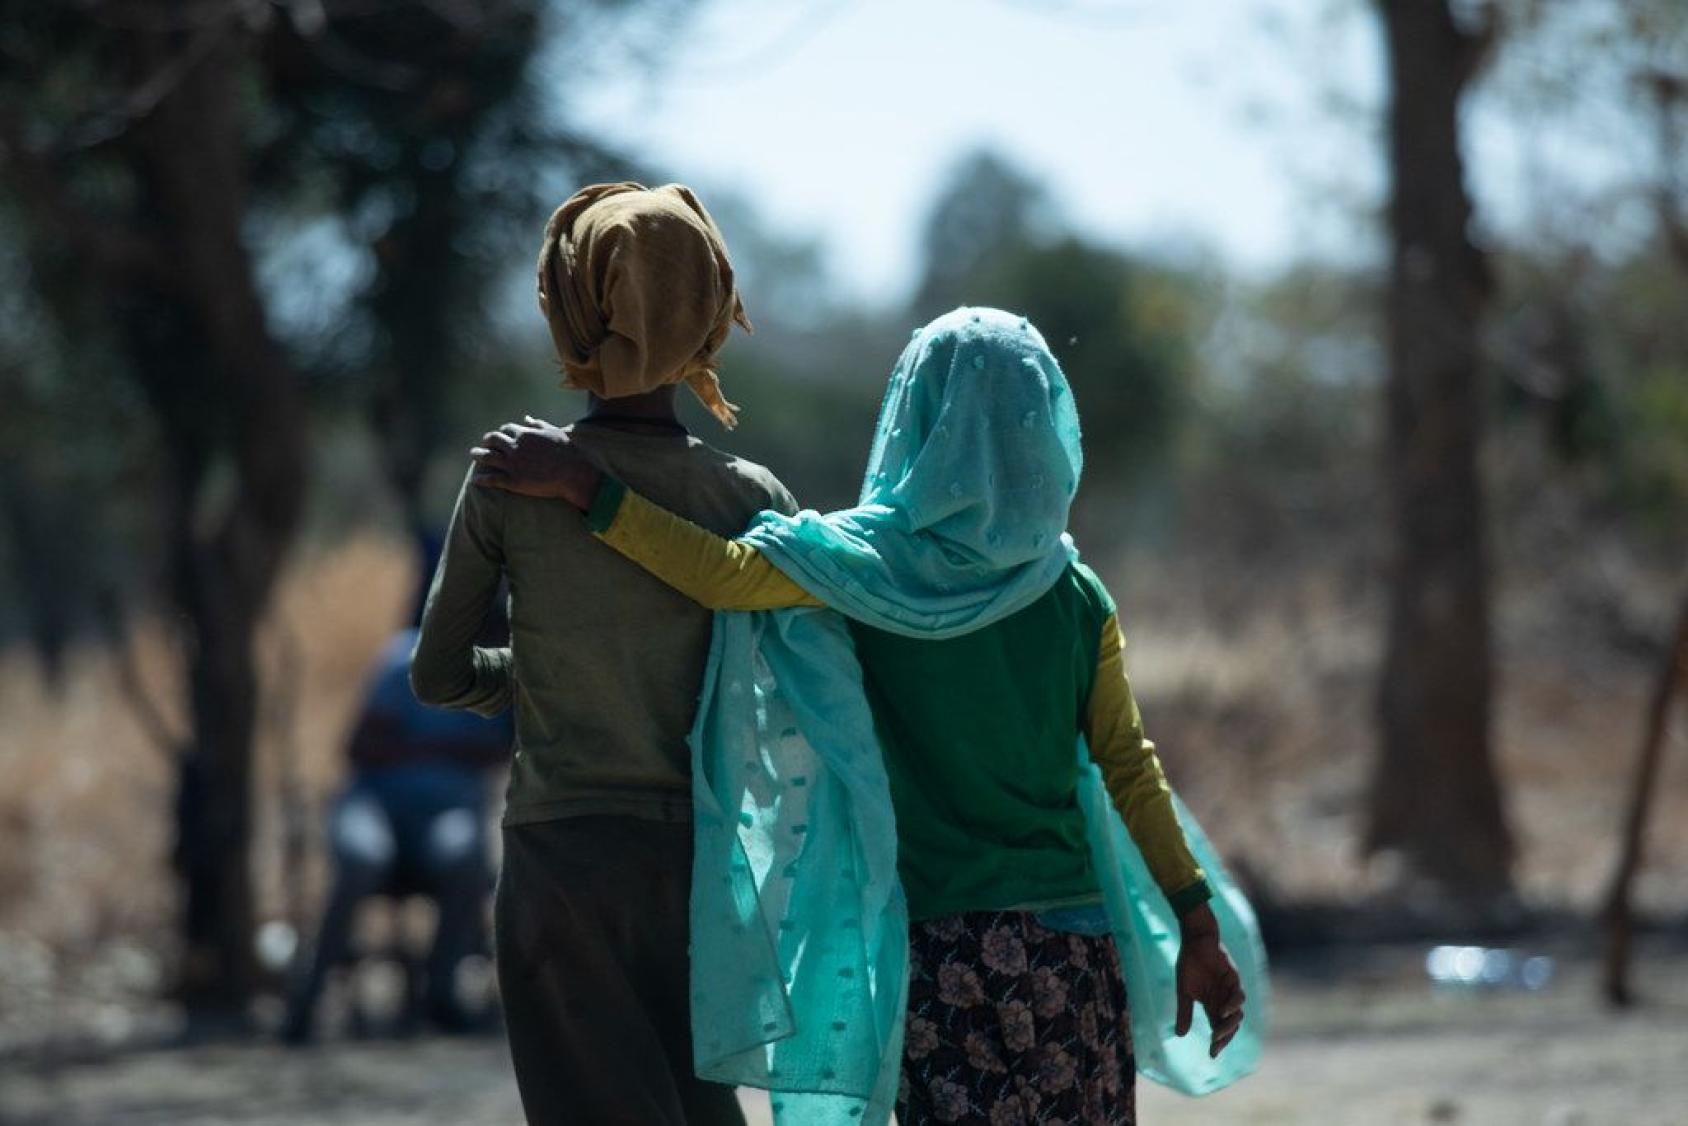 Deux jeunes filles éthiopiennes portant un foulard sont photographiées de dos marchant dans la rue, côte à côte, l'une ayant le bras posé autour de l'épaule de l'autre.